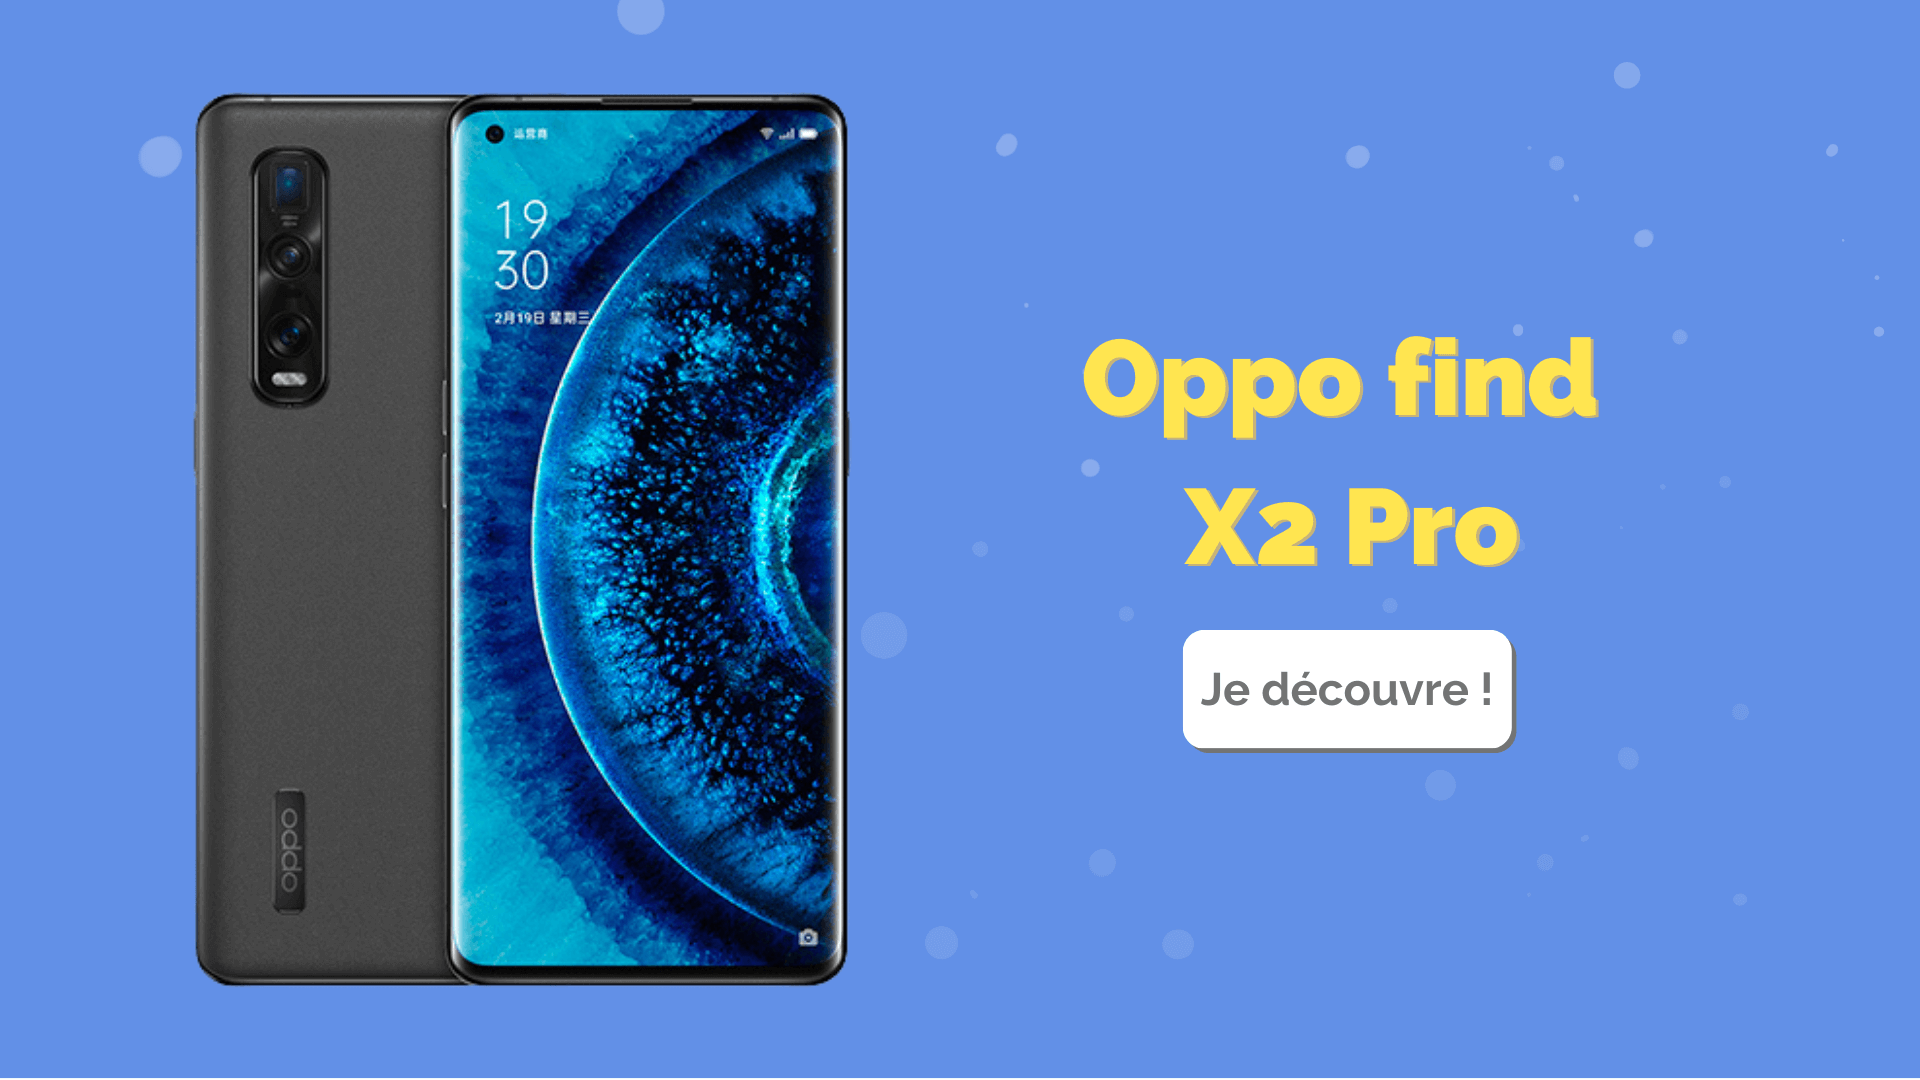 Oppo find X2 Pro